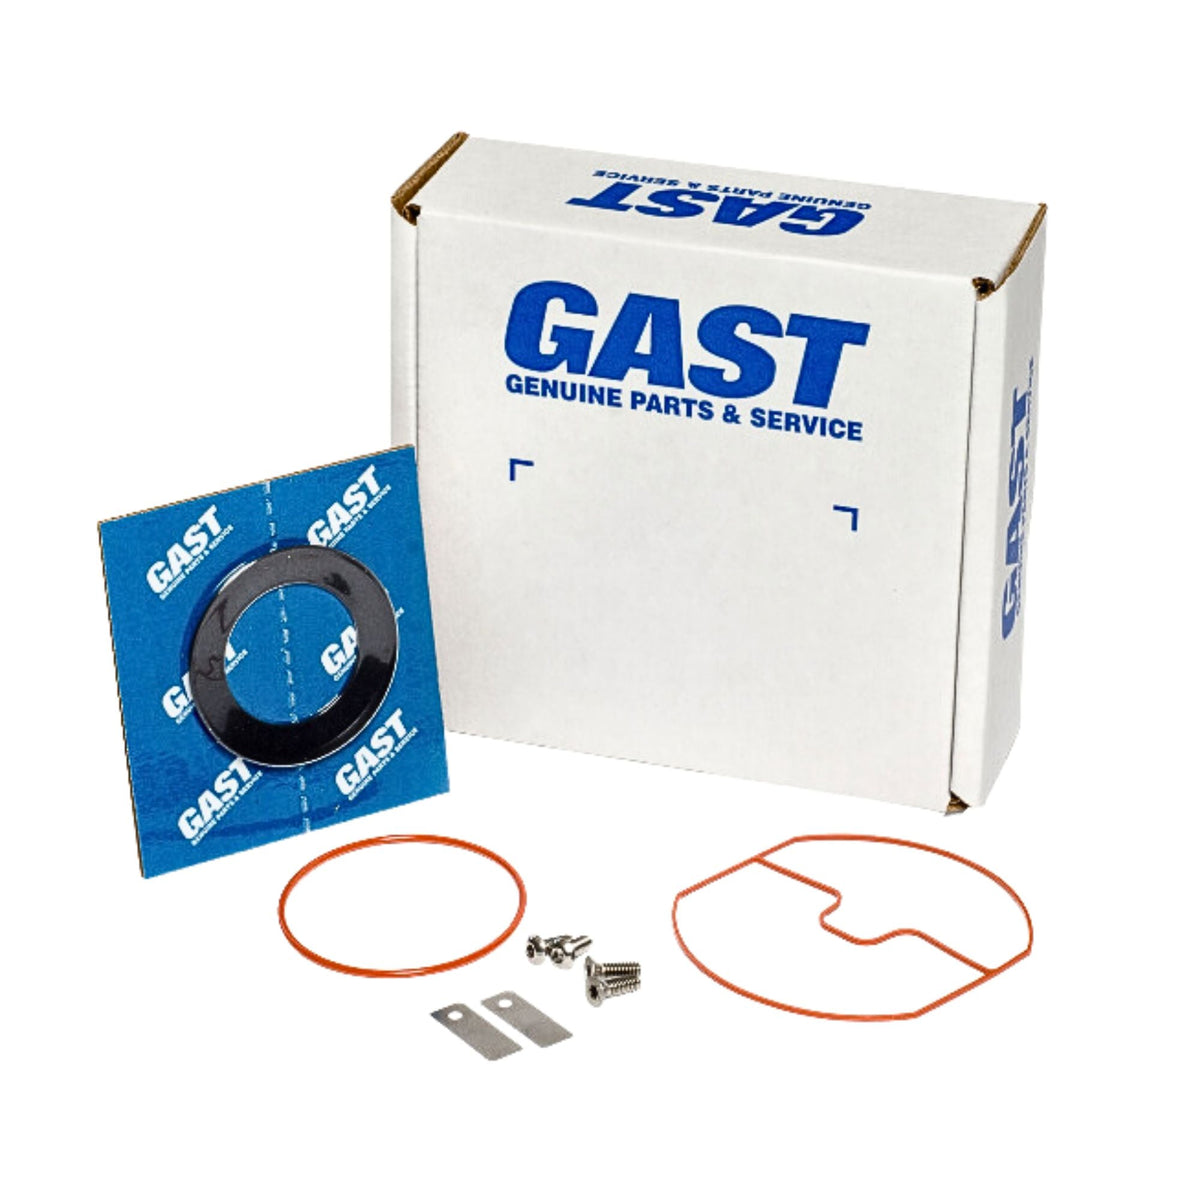 Gast | 74R1 Service Kit | K806 used on gast product line